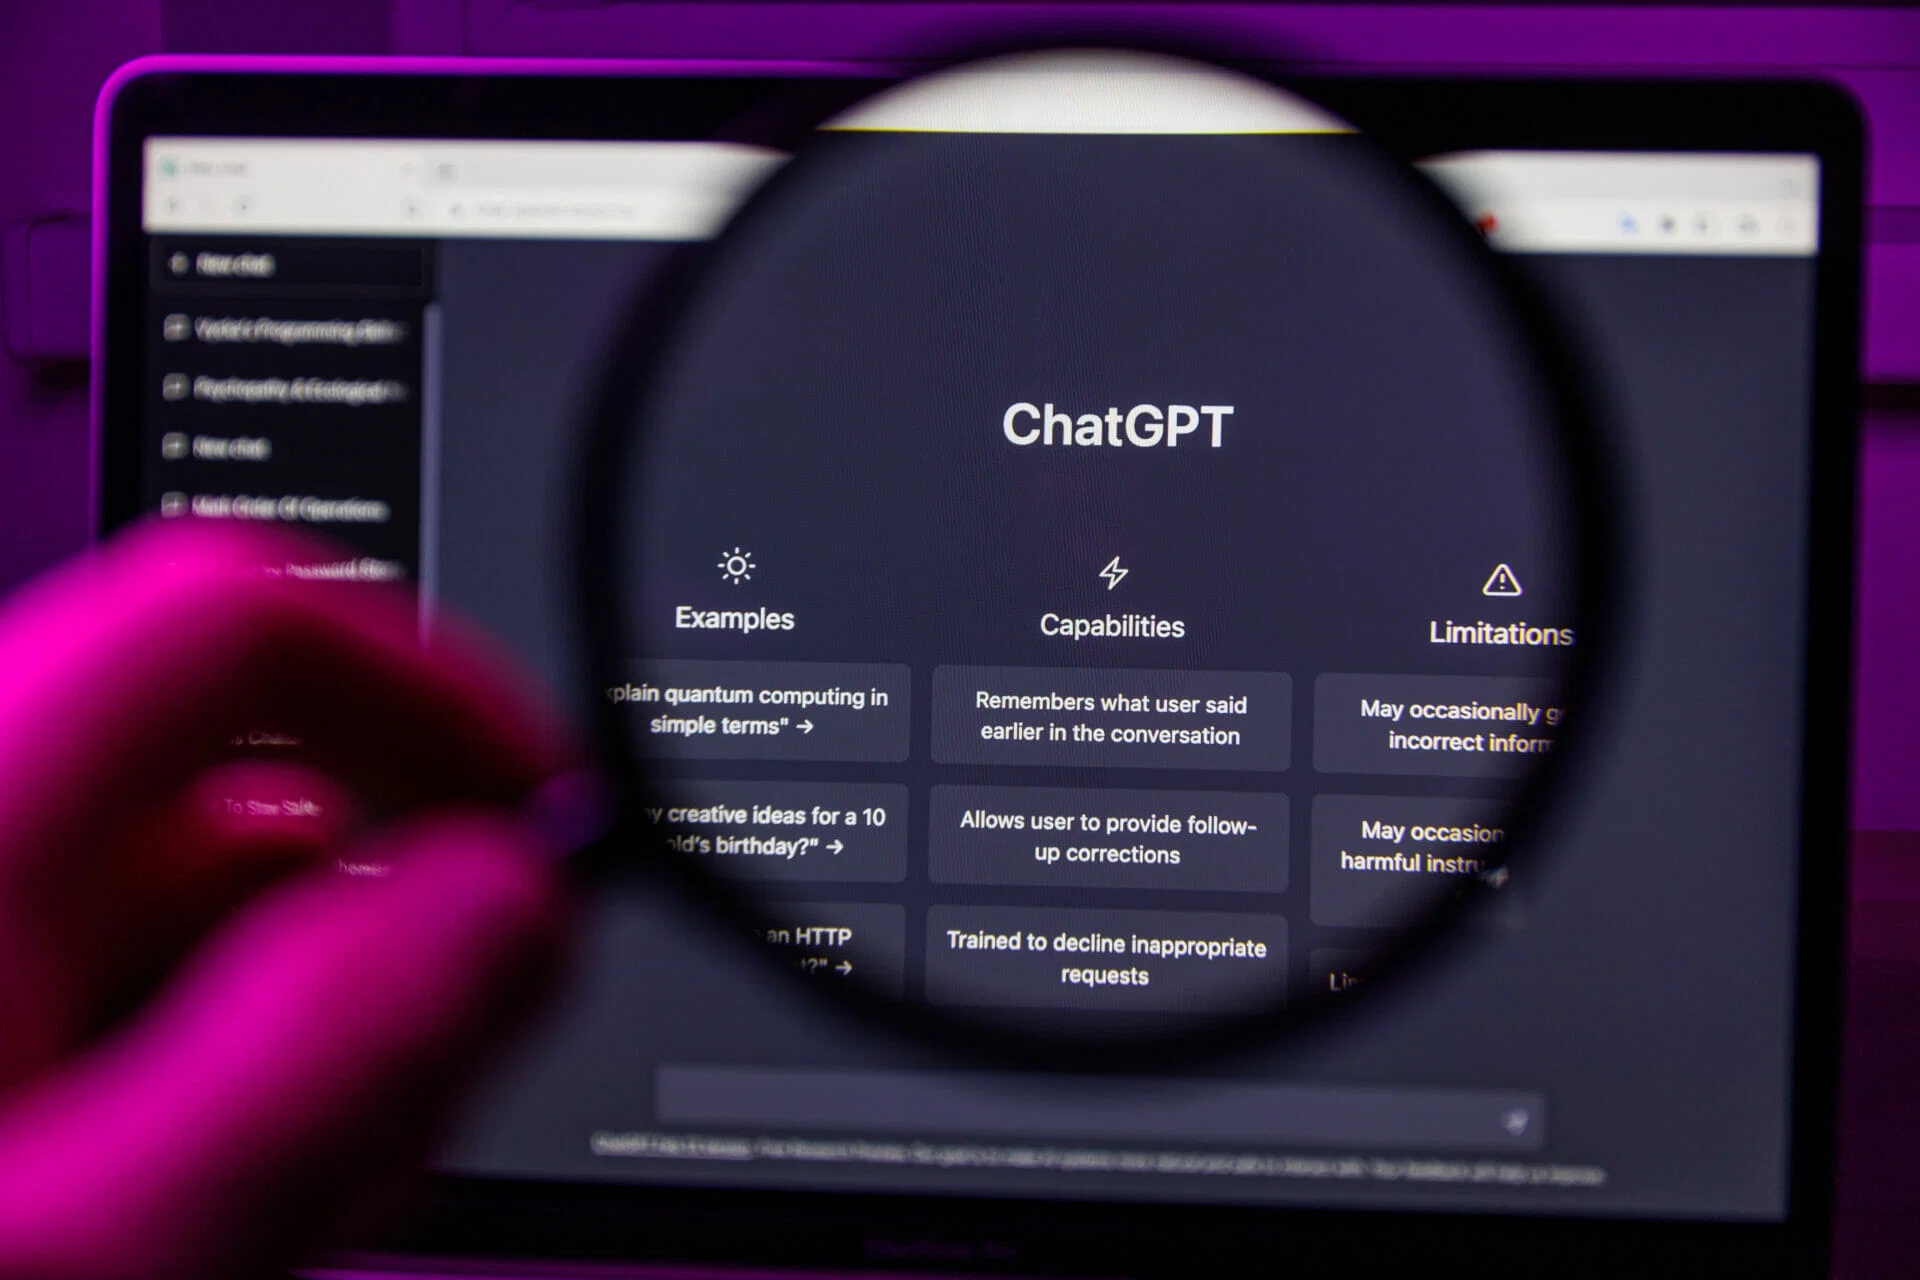 Normalde Ücretli Olan ChatGPT Özellikleri Tüm Kullanıcılara Sunulmaya Başlıyor: İnternet Erişimi, Dosya Yükleme ve Dahası